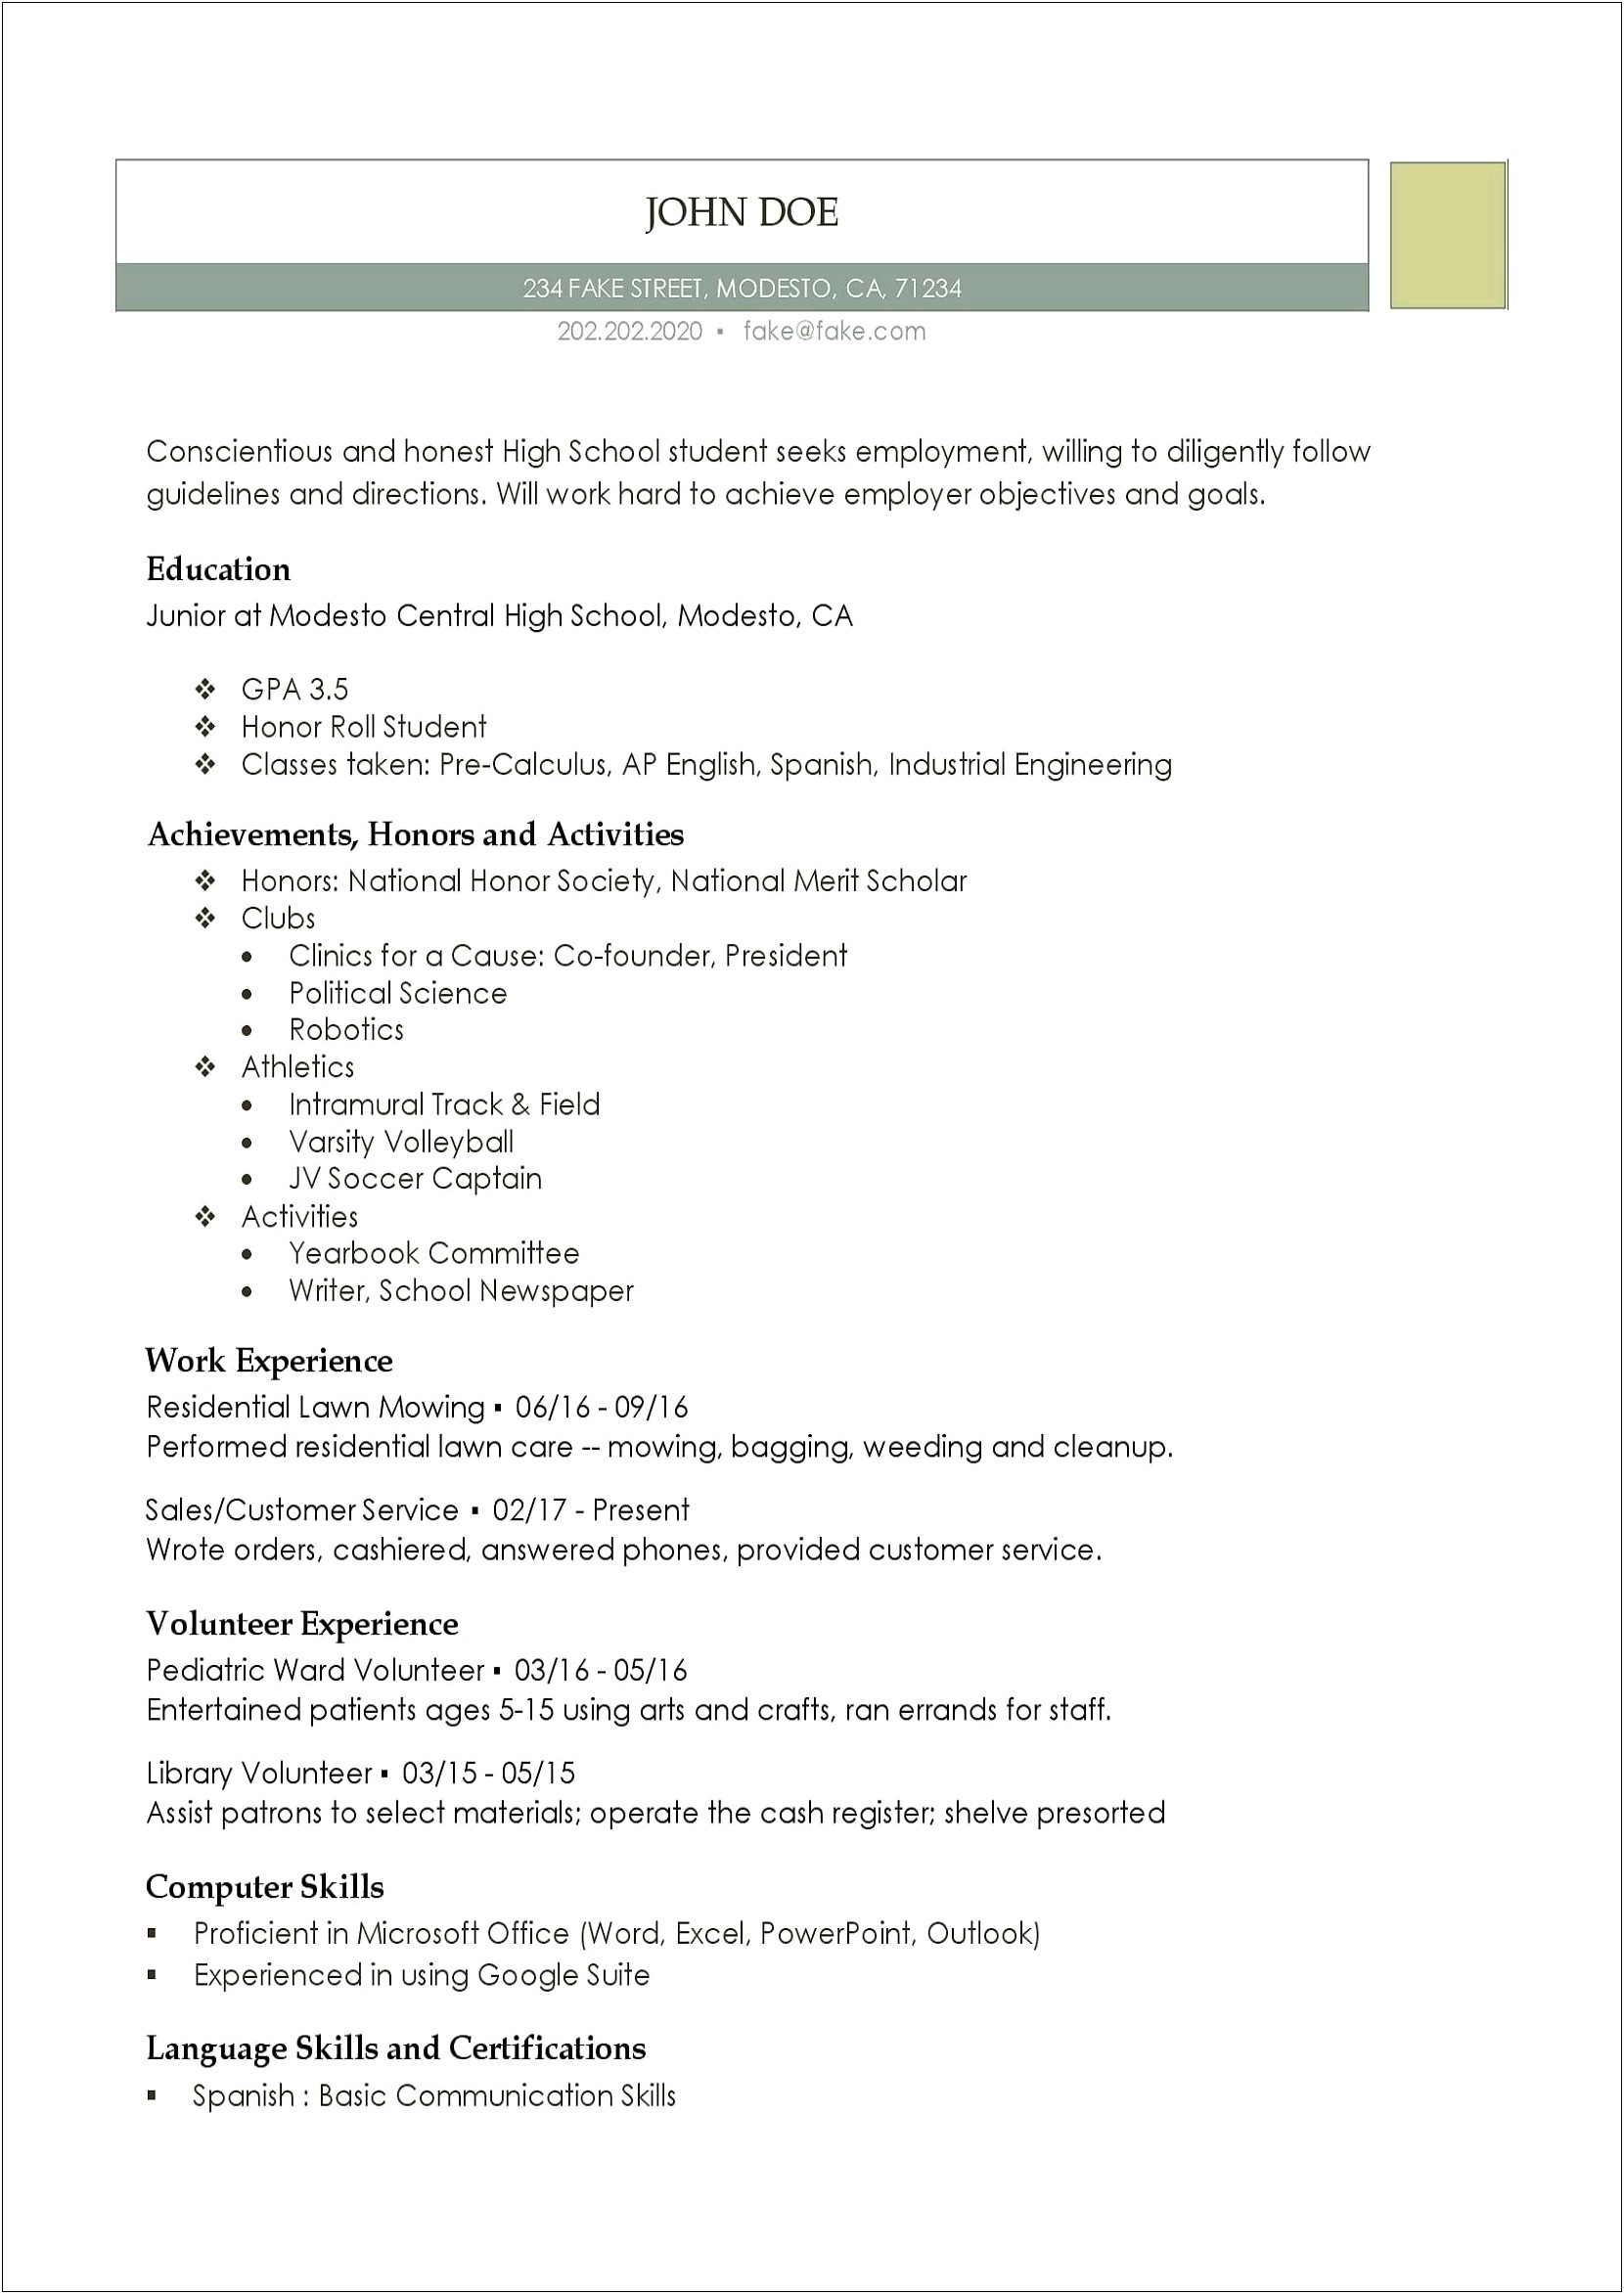 Sample Resume For High School Student Australia